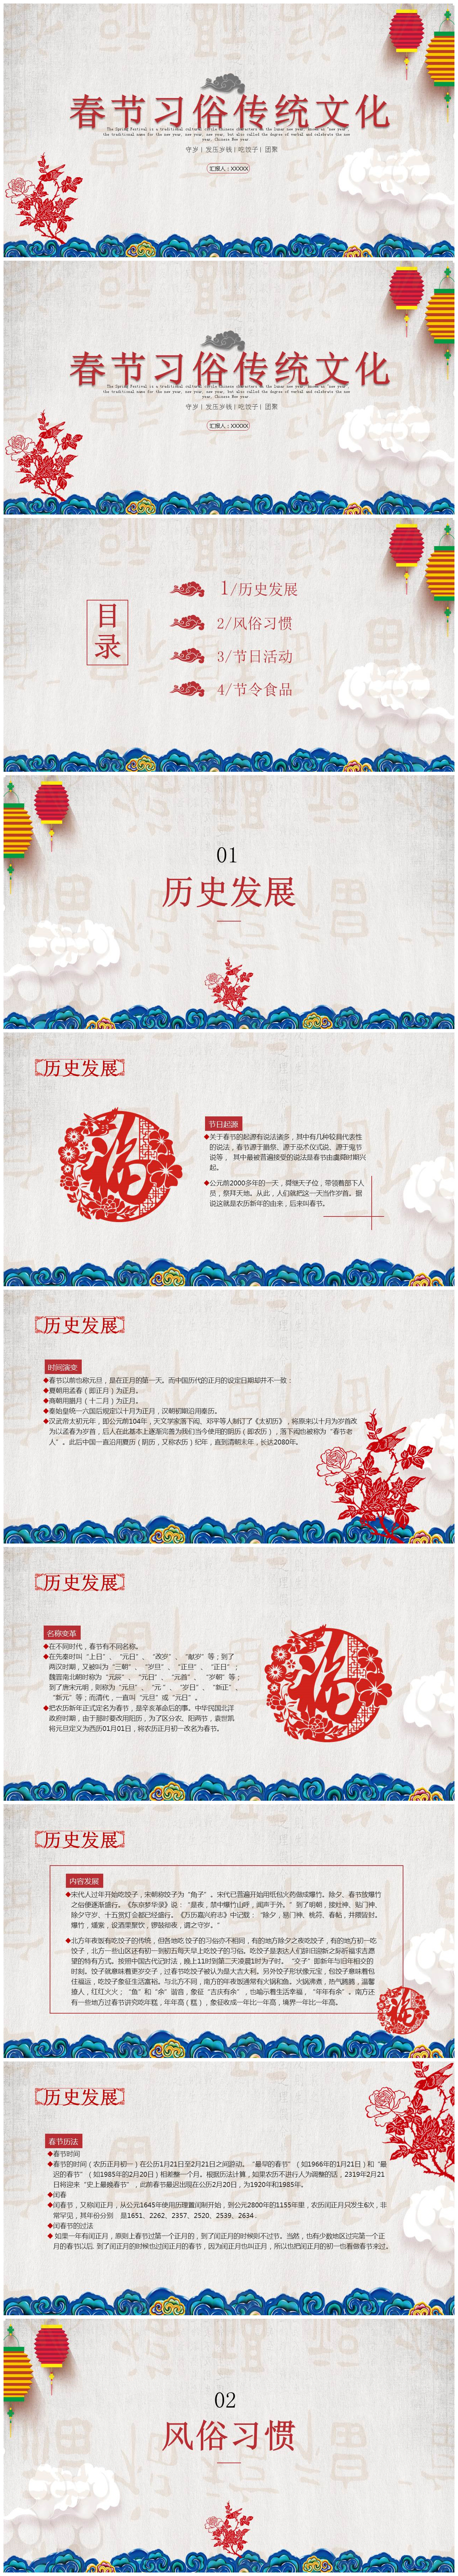 春节习俗传统文化ppt模板-聚给网